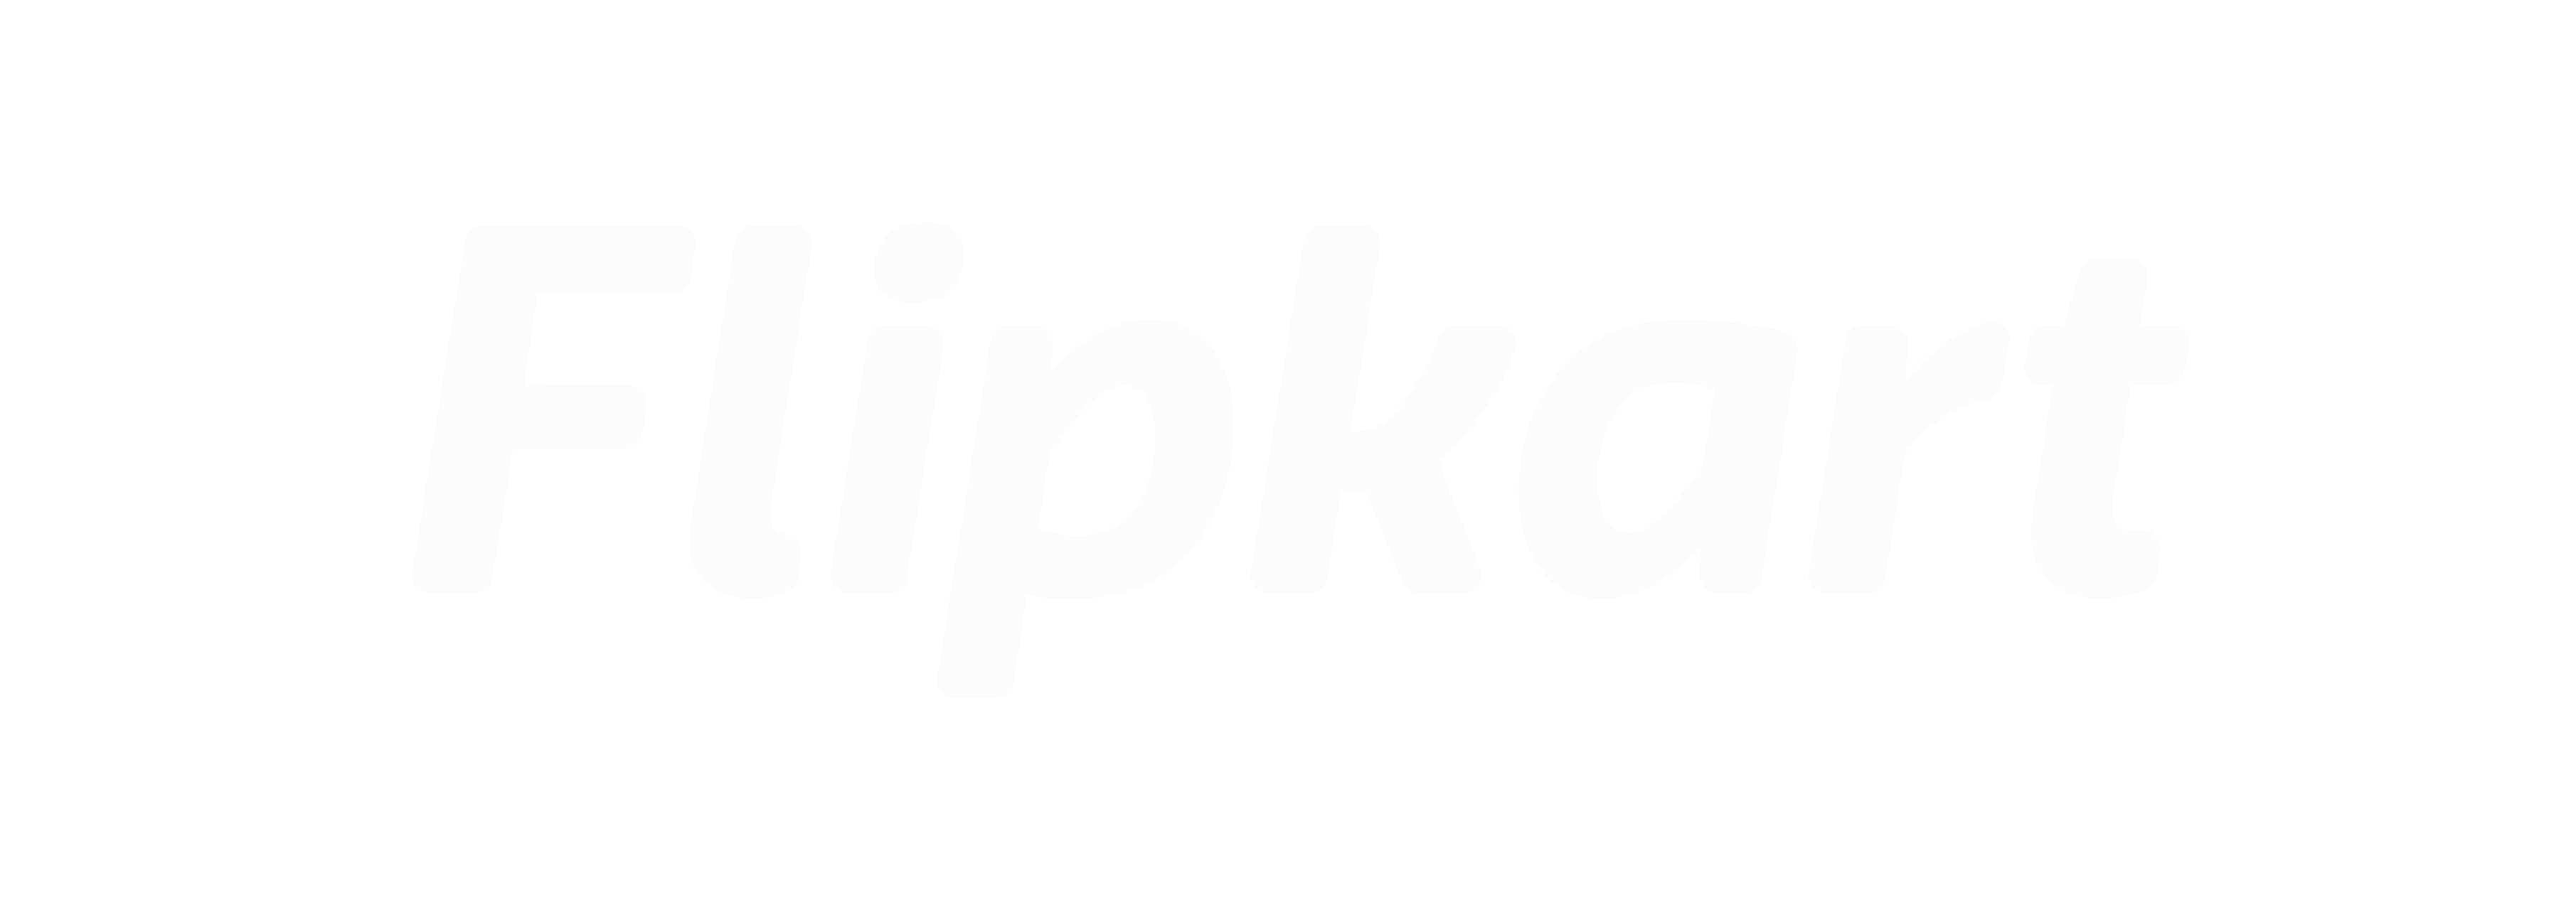 flipkart-01